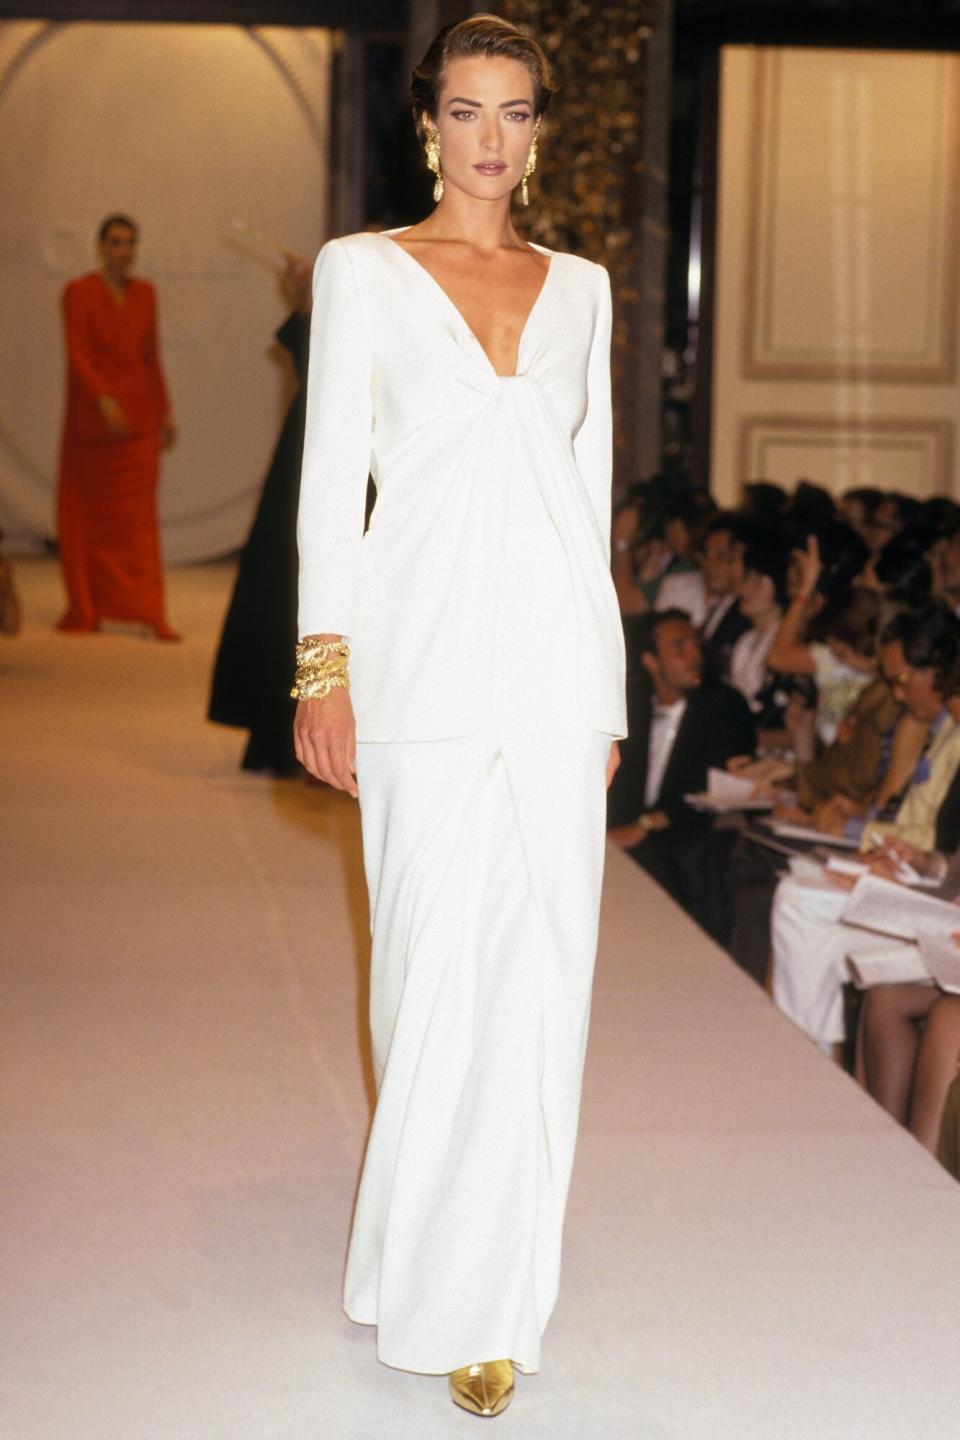 Tatjana Patitz lors du défilé de Haute-couture Christian Dior hiver 1991 en juillet 1991 à Paris, France.